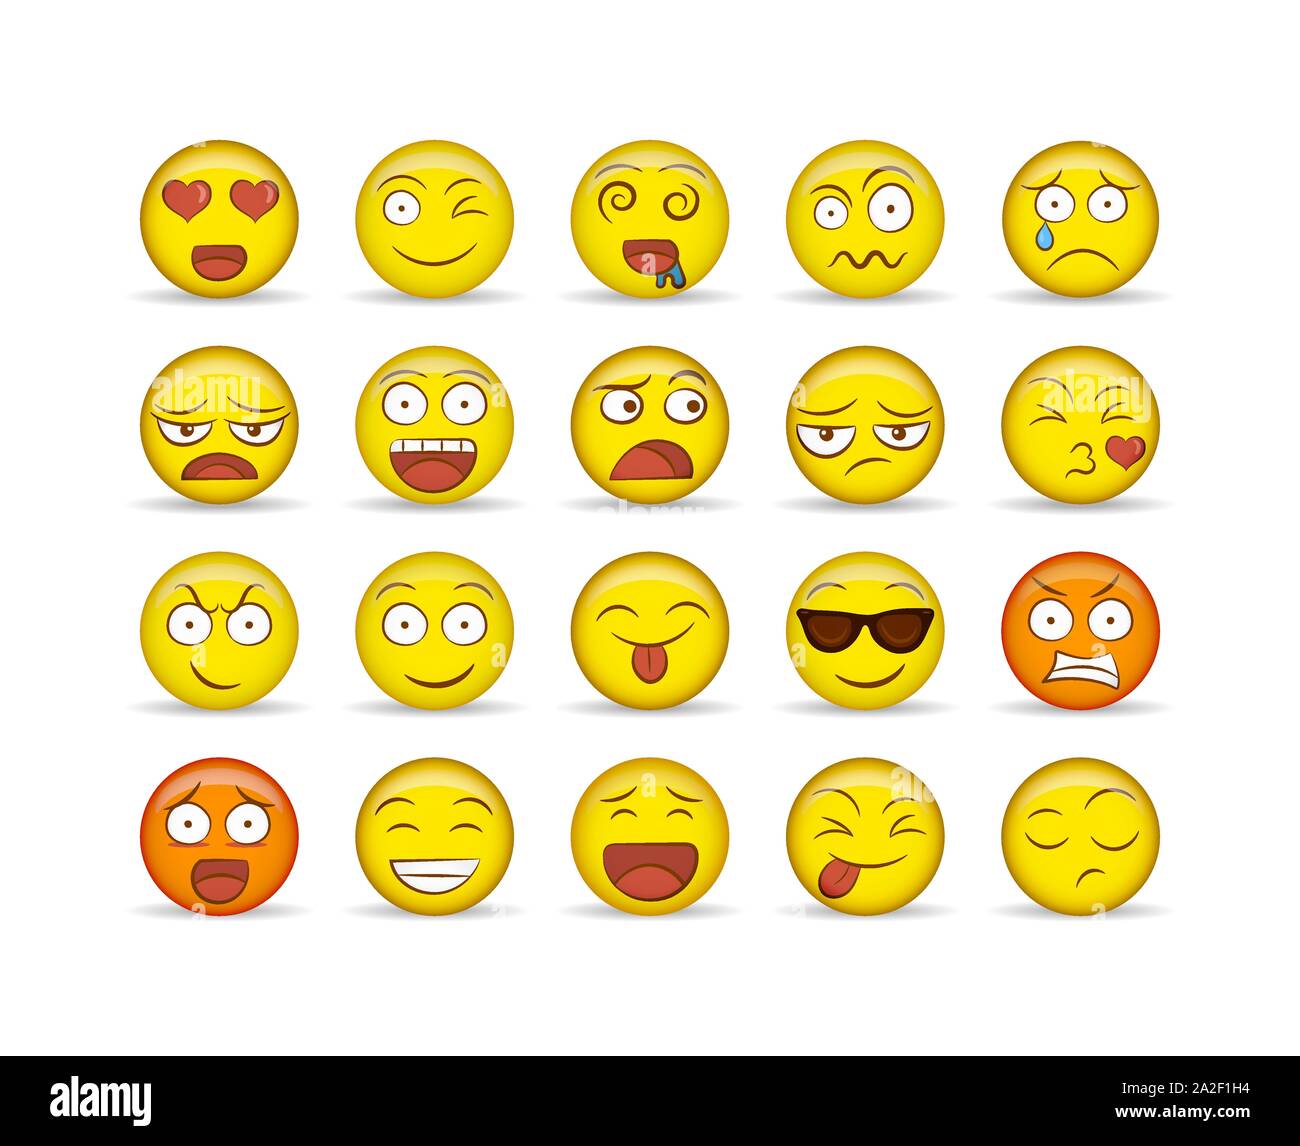 Spaß gelb Smiley-symbol auf isolierten weißen Hintergrund gesetzt. Die soziale Reaktion Sammlung für moderne jugendlich oder Kinder Kommunikation Konzept vielfältig. Stock Vektor